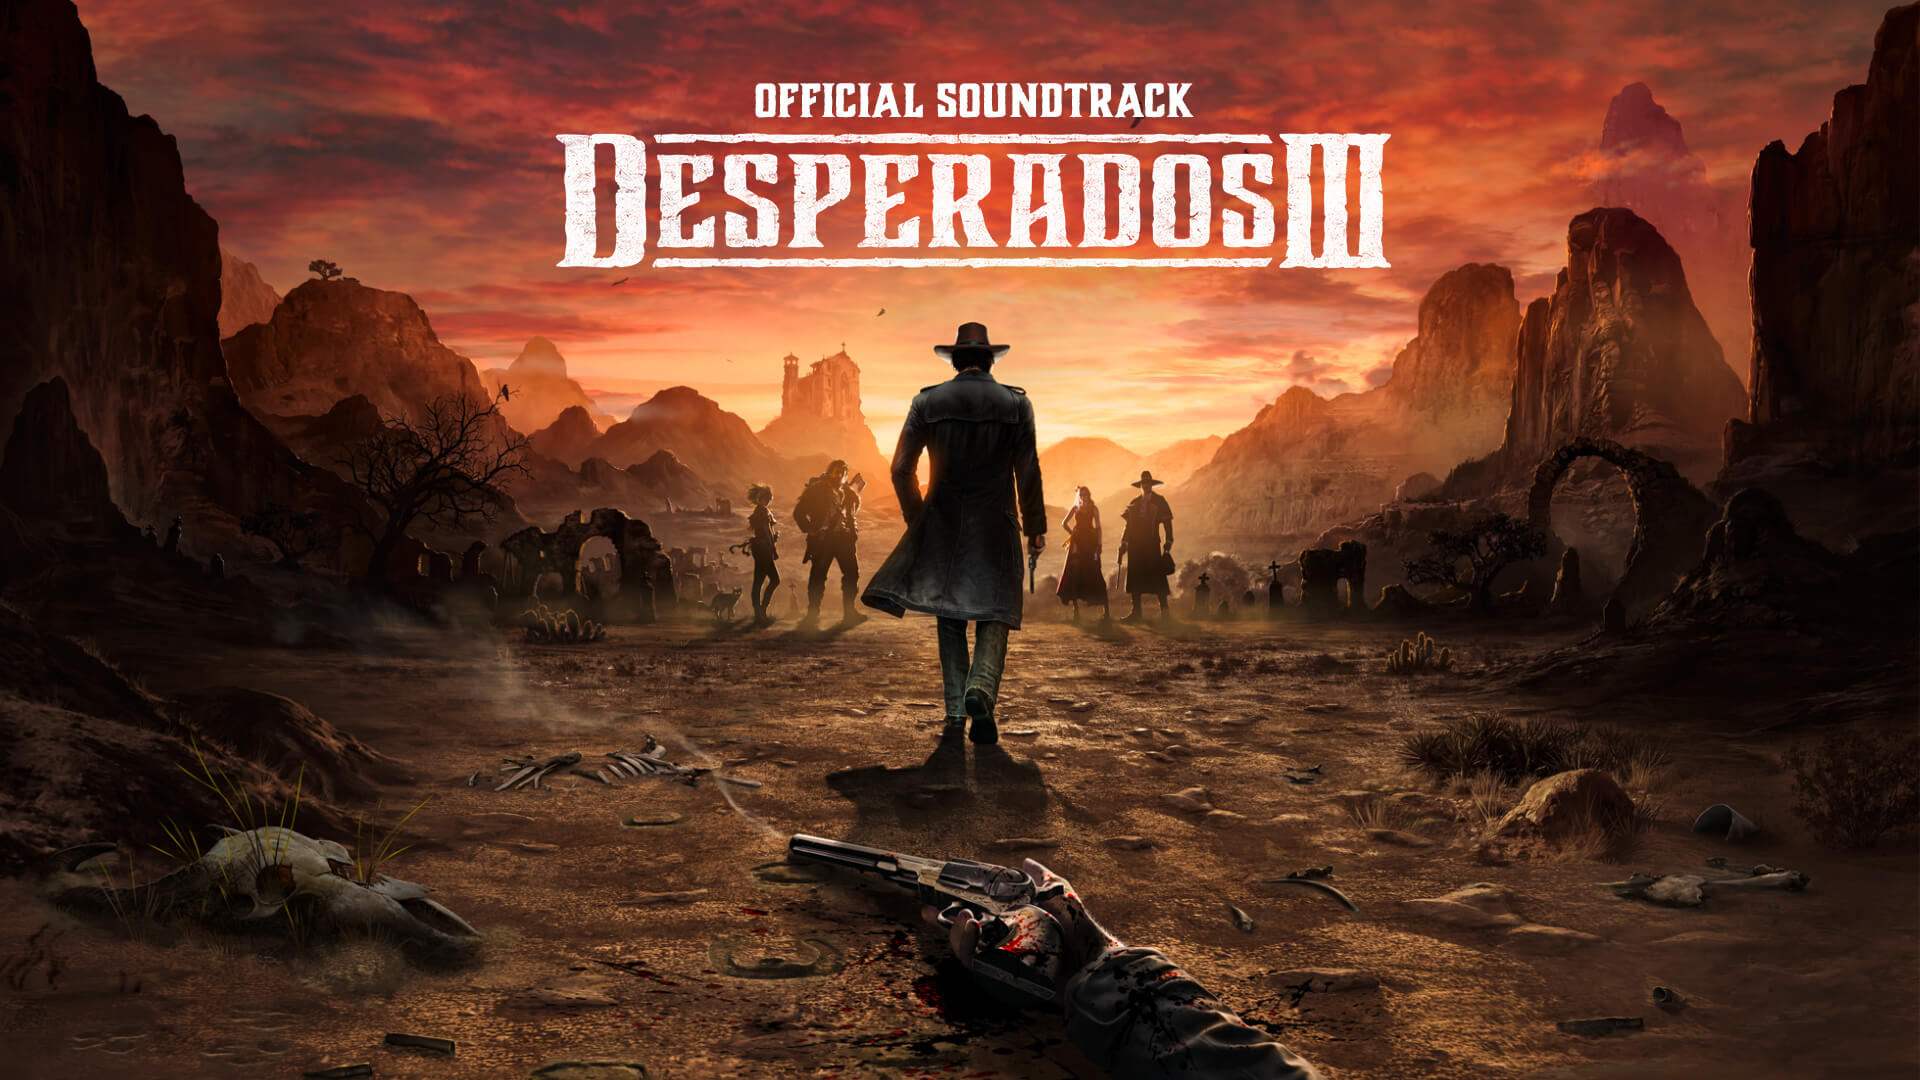 Desperados III - Soundtrack DLC Steam CD Key 4.51 usd